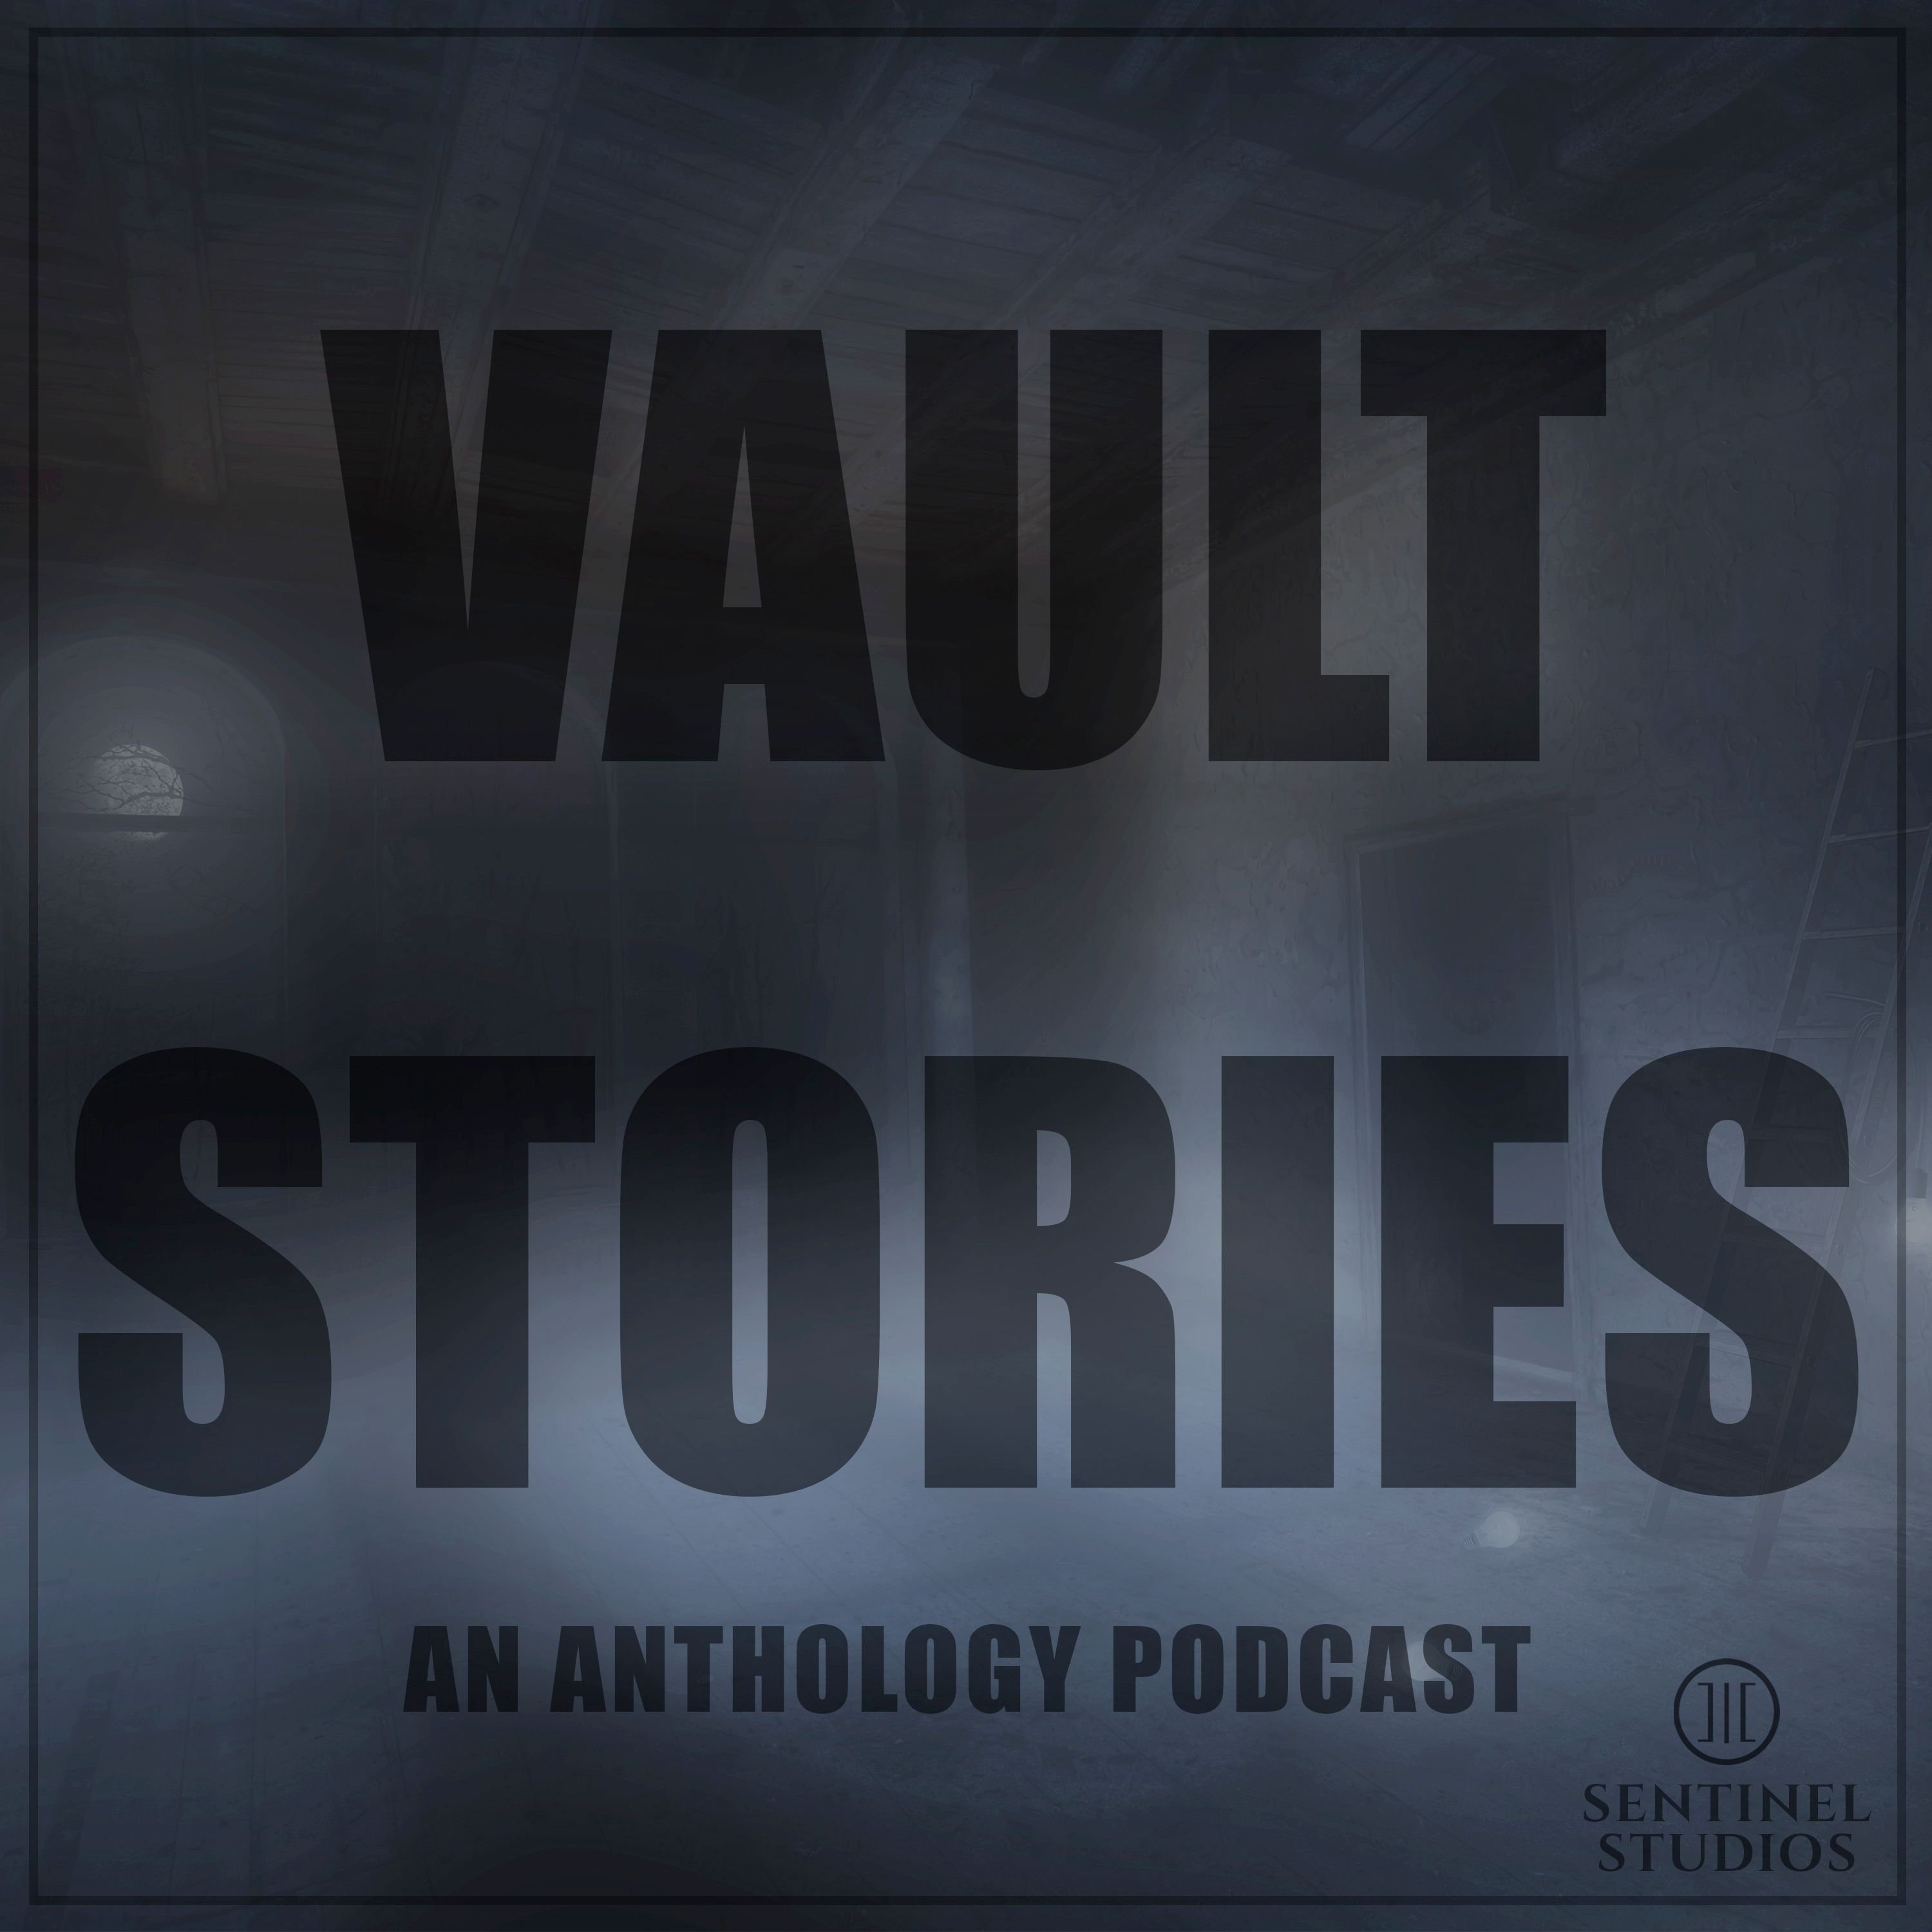 Vault Stories